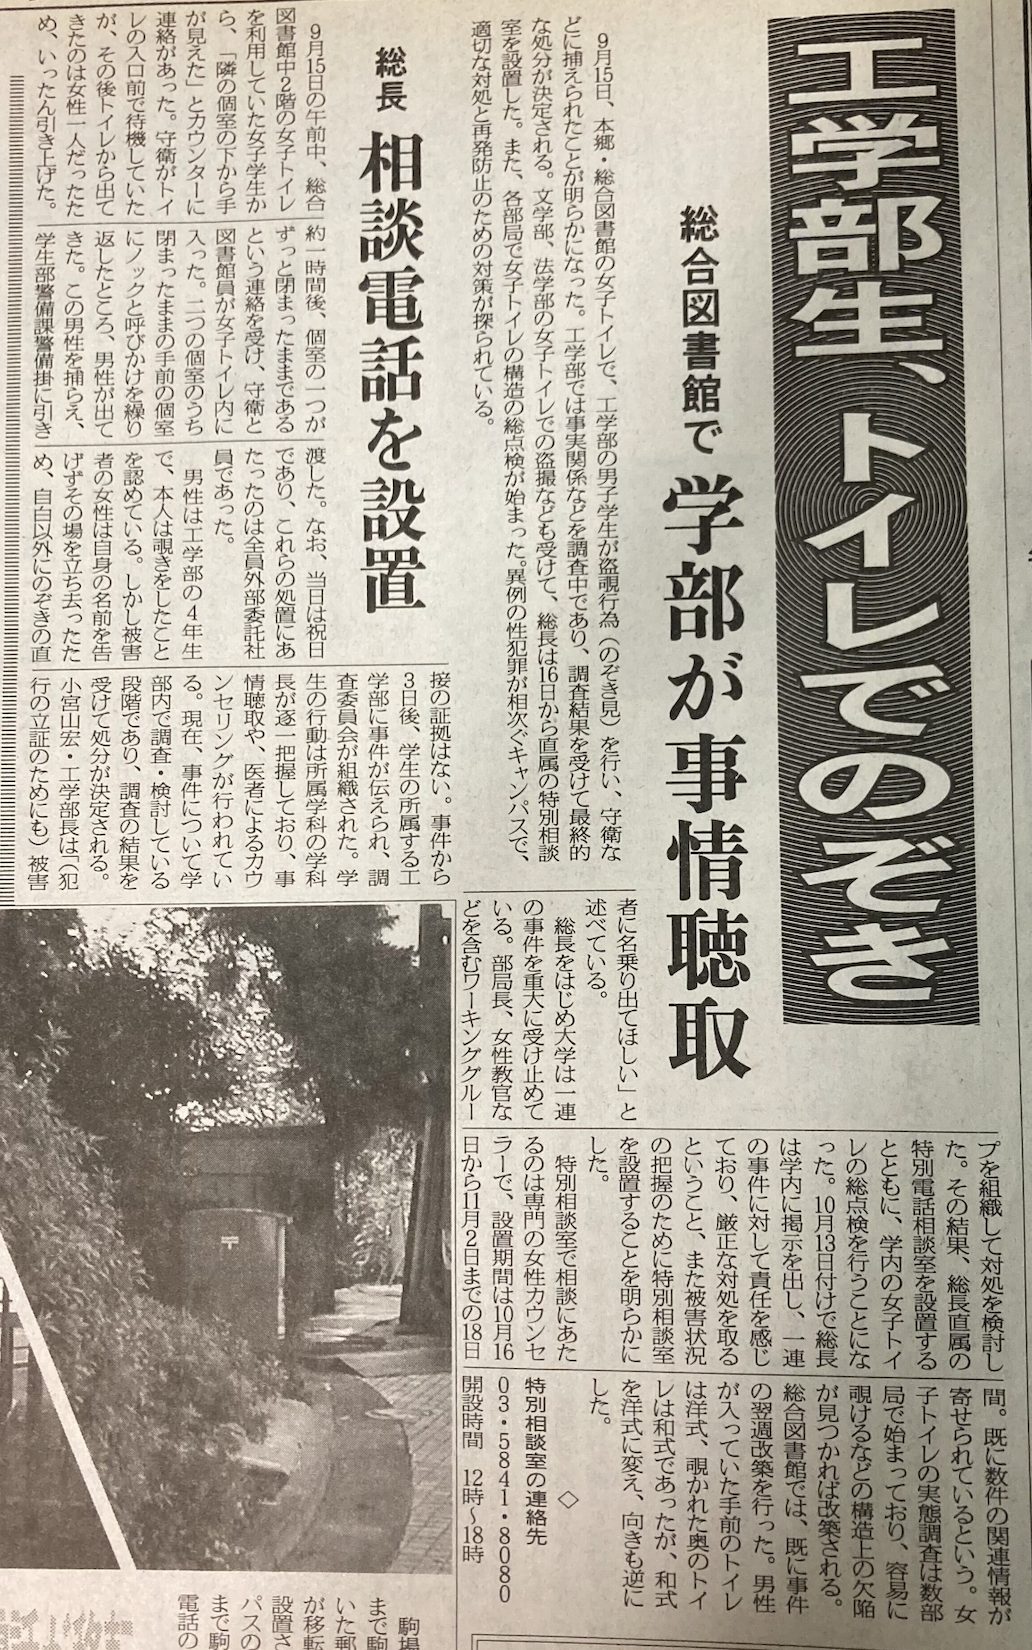 高重さんが執筆したのぞき事件に関する記事（『東京大学新聞』2000年10月24日号）